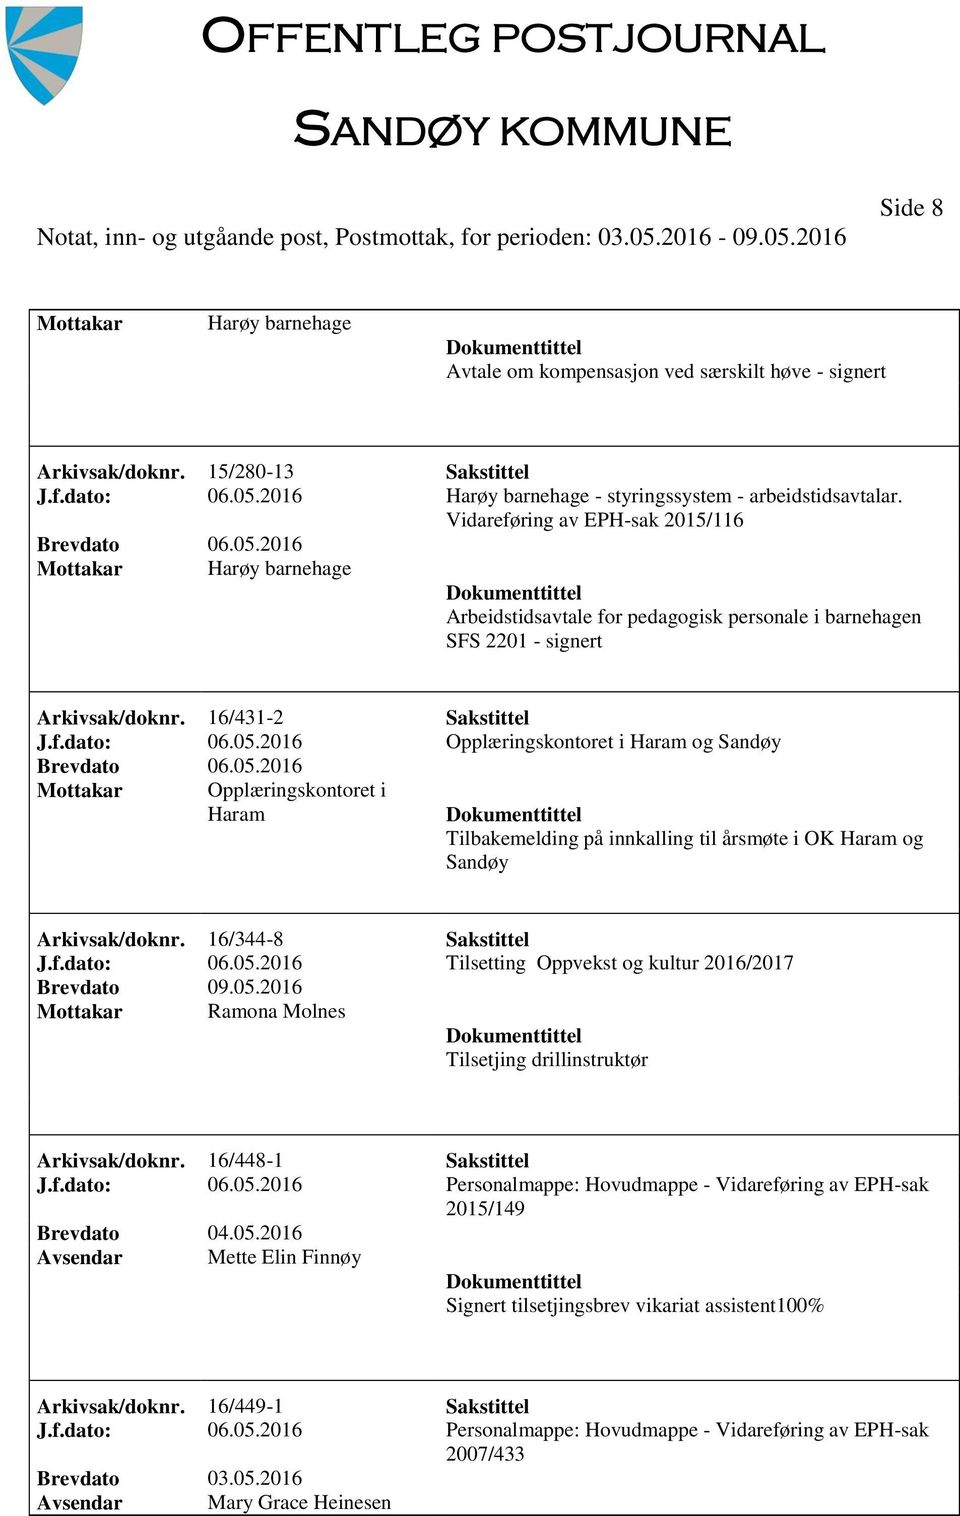 2016 Opplæringskontoret i Haram og Sandøy Mottakar Opplæringskontoret i Haram Tilbakemelding på innkalling til årsmøte i OK Haram og Sandøy Arkivsak/doknr. 16/344-8 Sakstittel J.f.dato: 06.05.